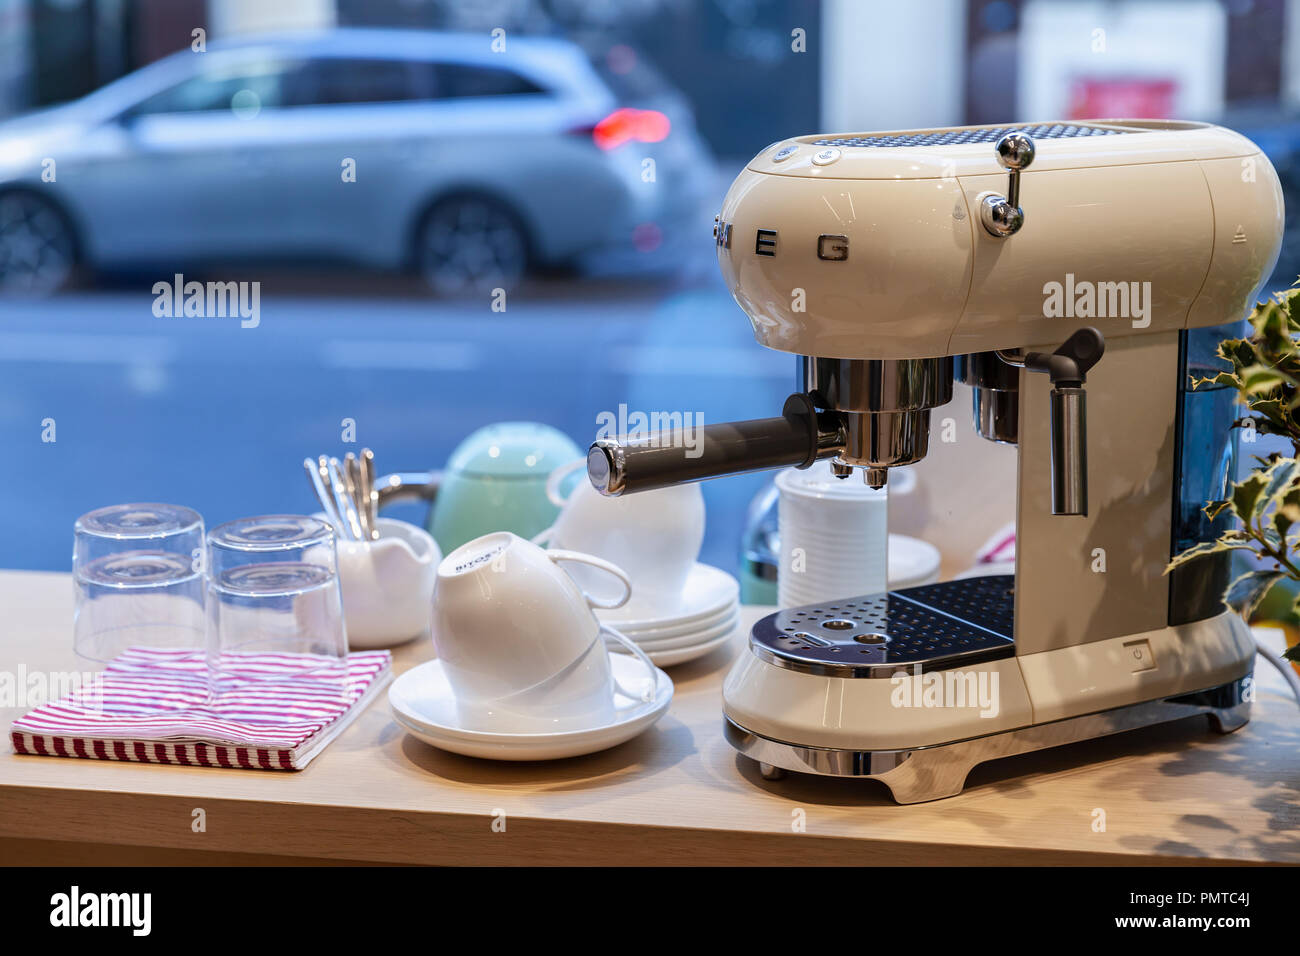 Mailand, Italien - Januar 19, 2018: Weiß Espressomaschine von Smeg. Es ist ein italienischer Hersteller von Luxushotels Haushaltsgeräte Stockfoto